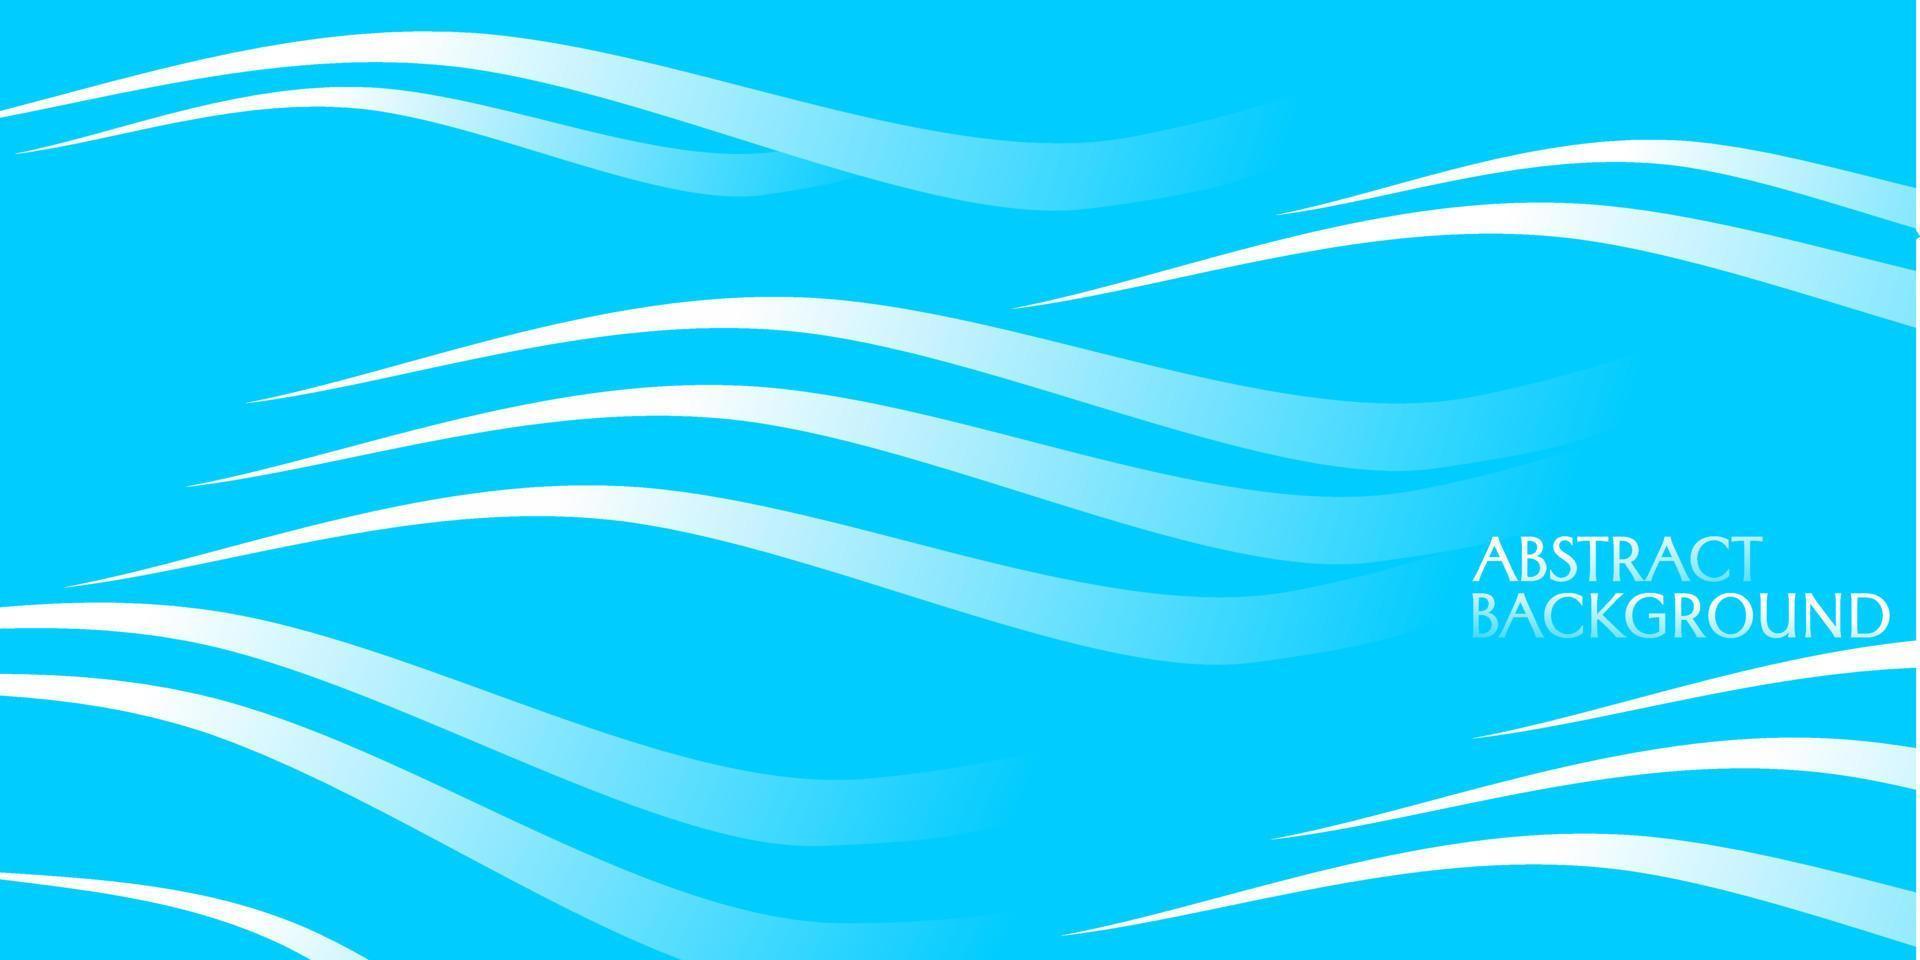 blauwe abstracte achtergrond met golven textuur. ontwerp voor omslag, banner, bestemmingspagina vector